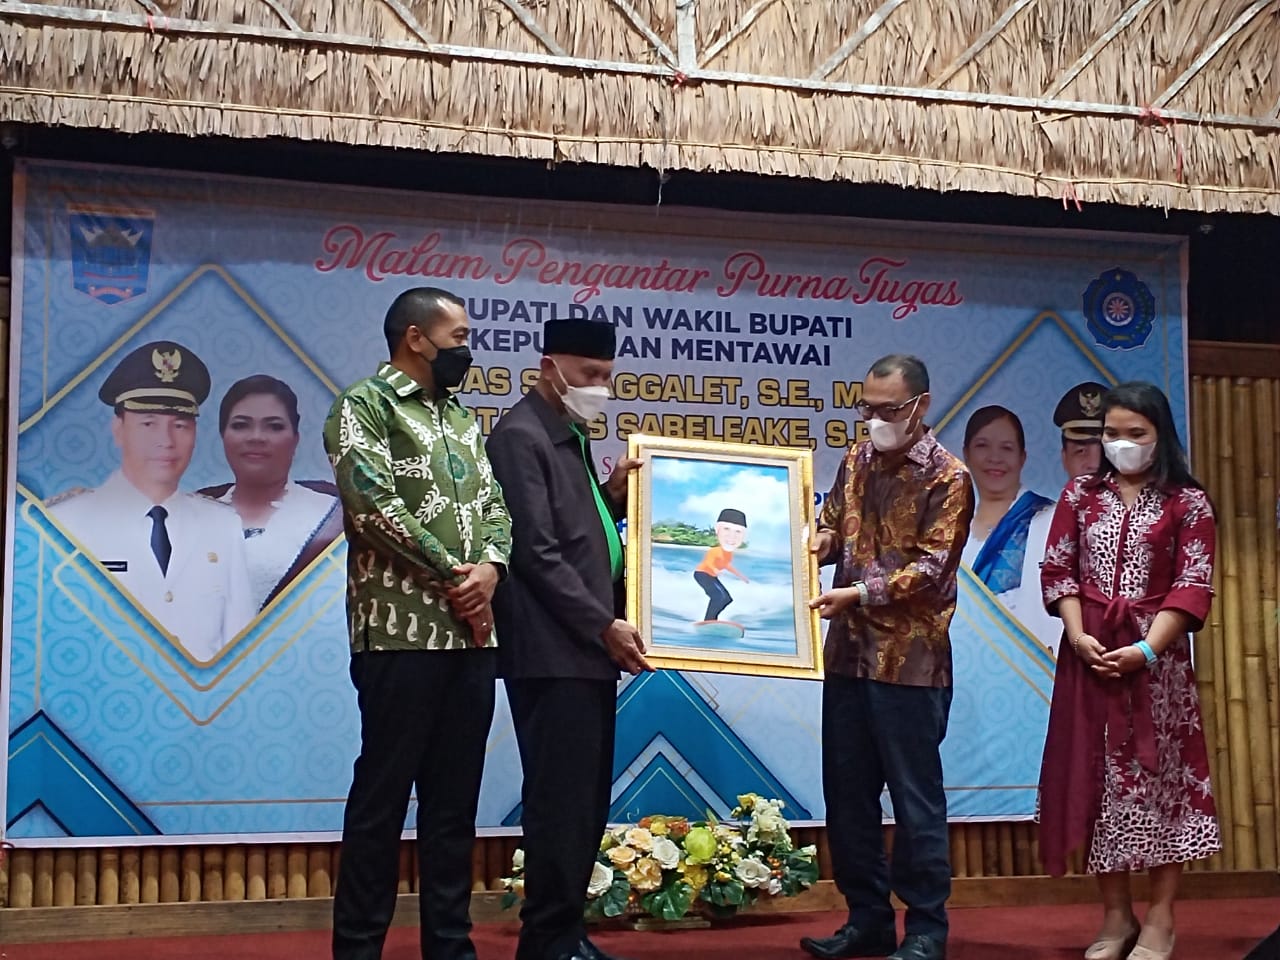 Malam pengantar purna tugas Bupati dan Wakil Bupati Kepulauan Mentawai, Senin (7/3/2022).